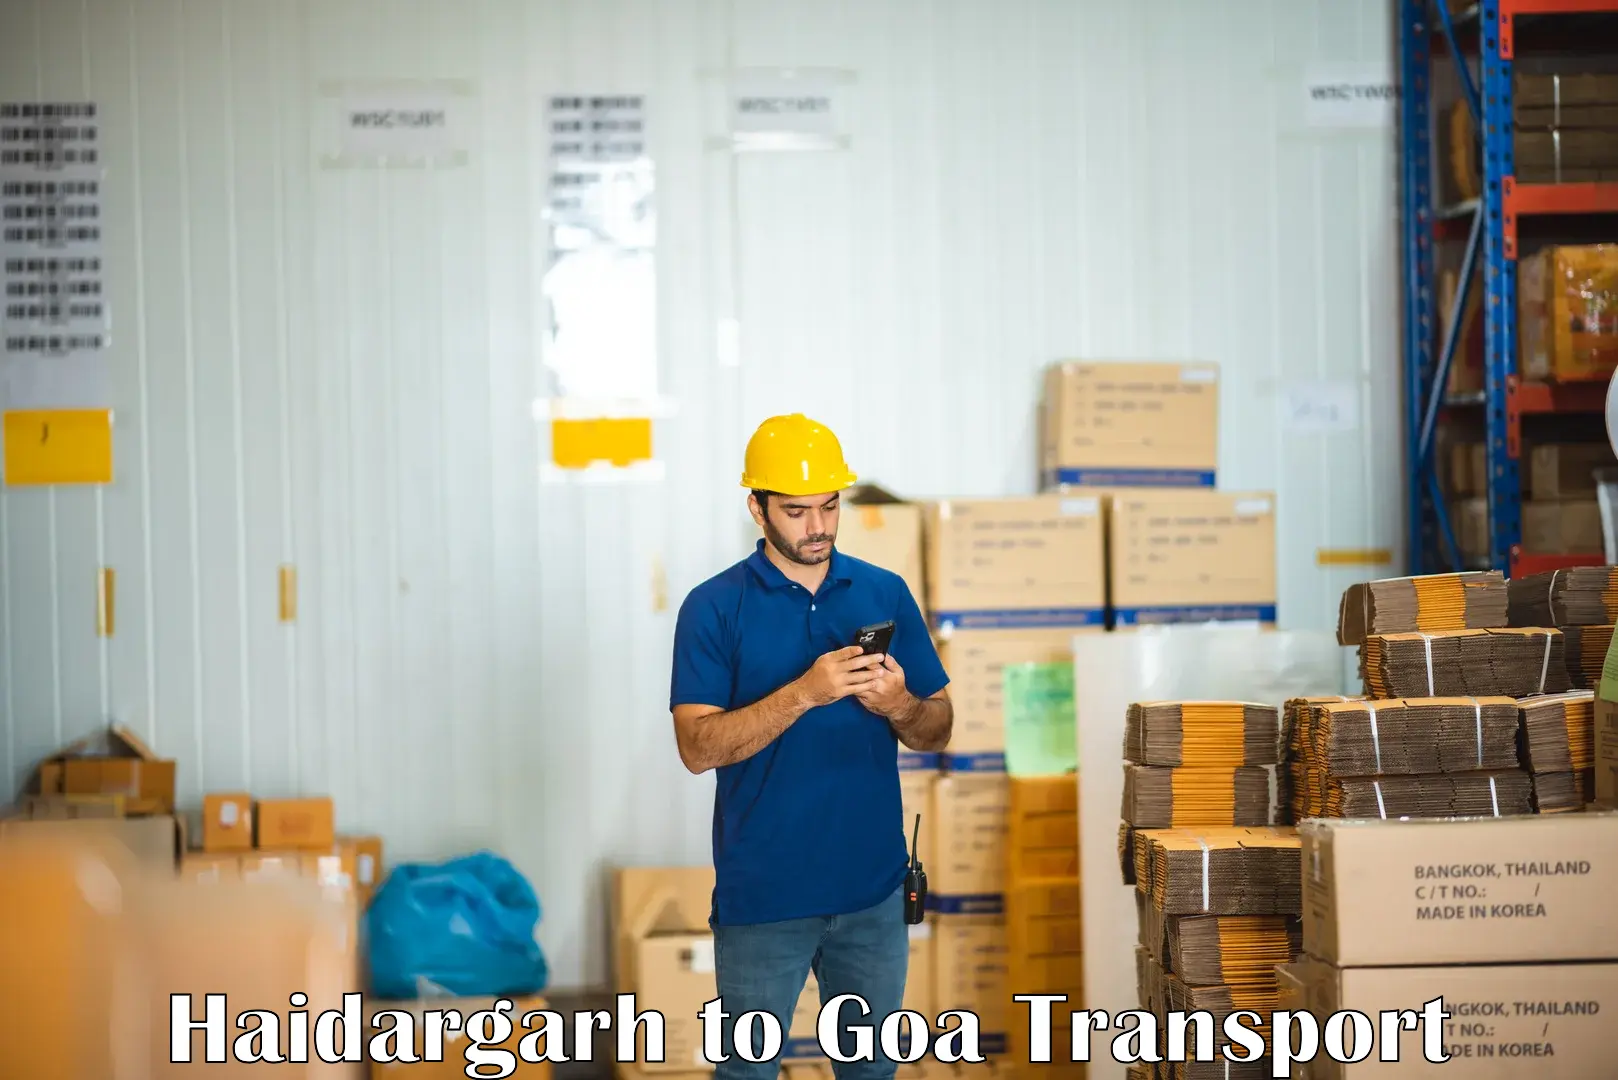 Online transport service Haidargarh to Goa